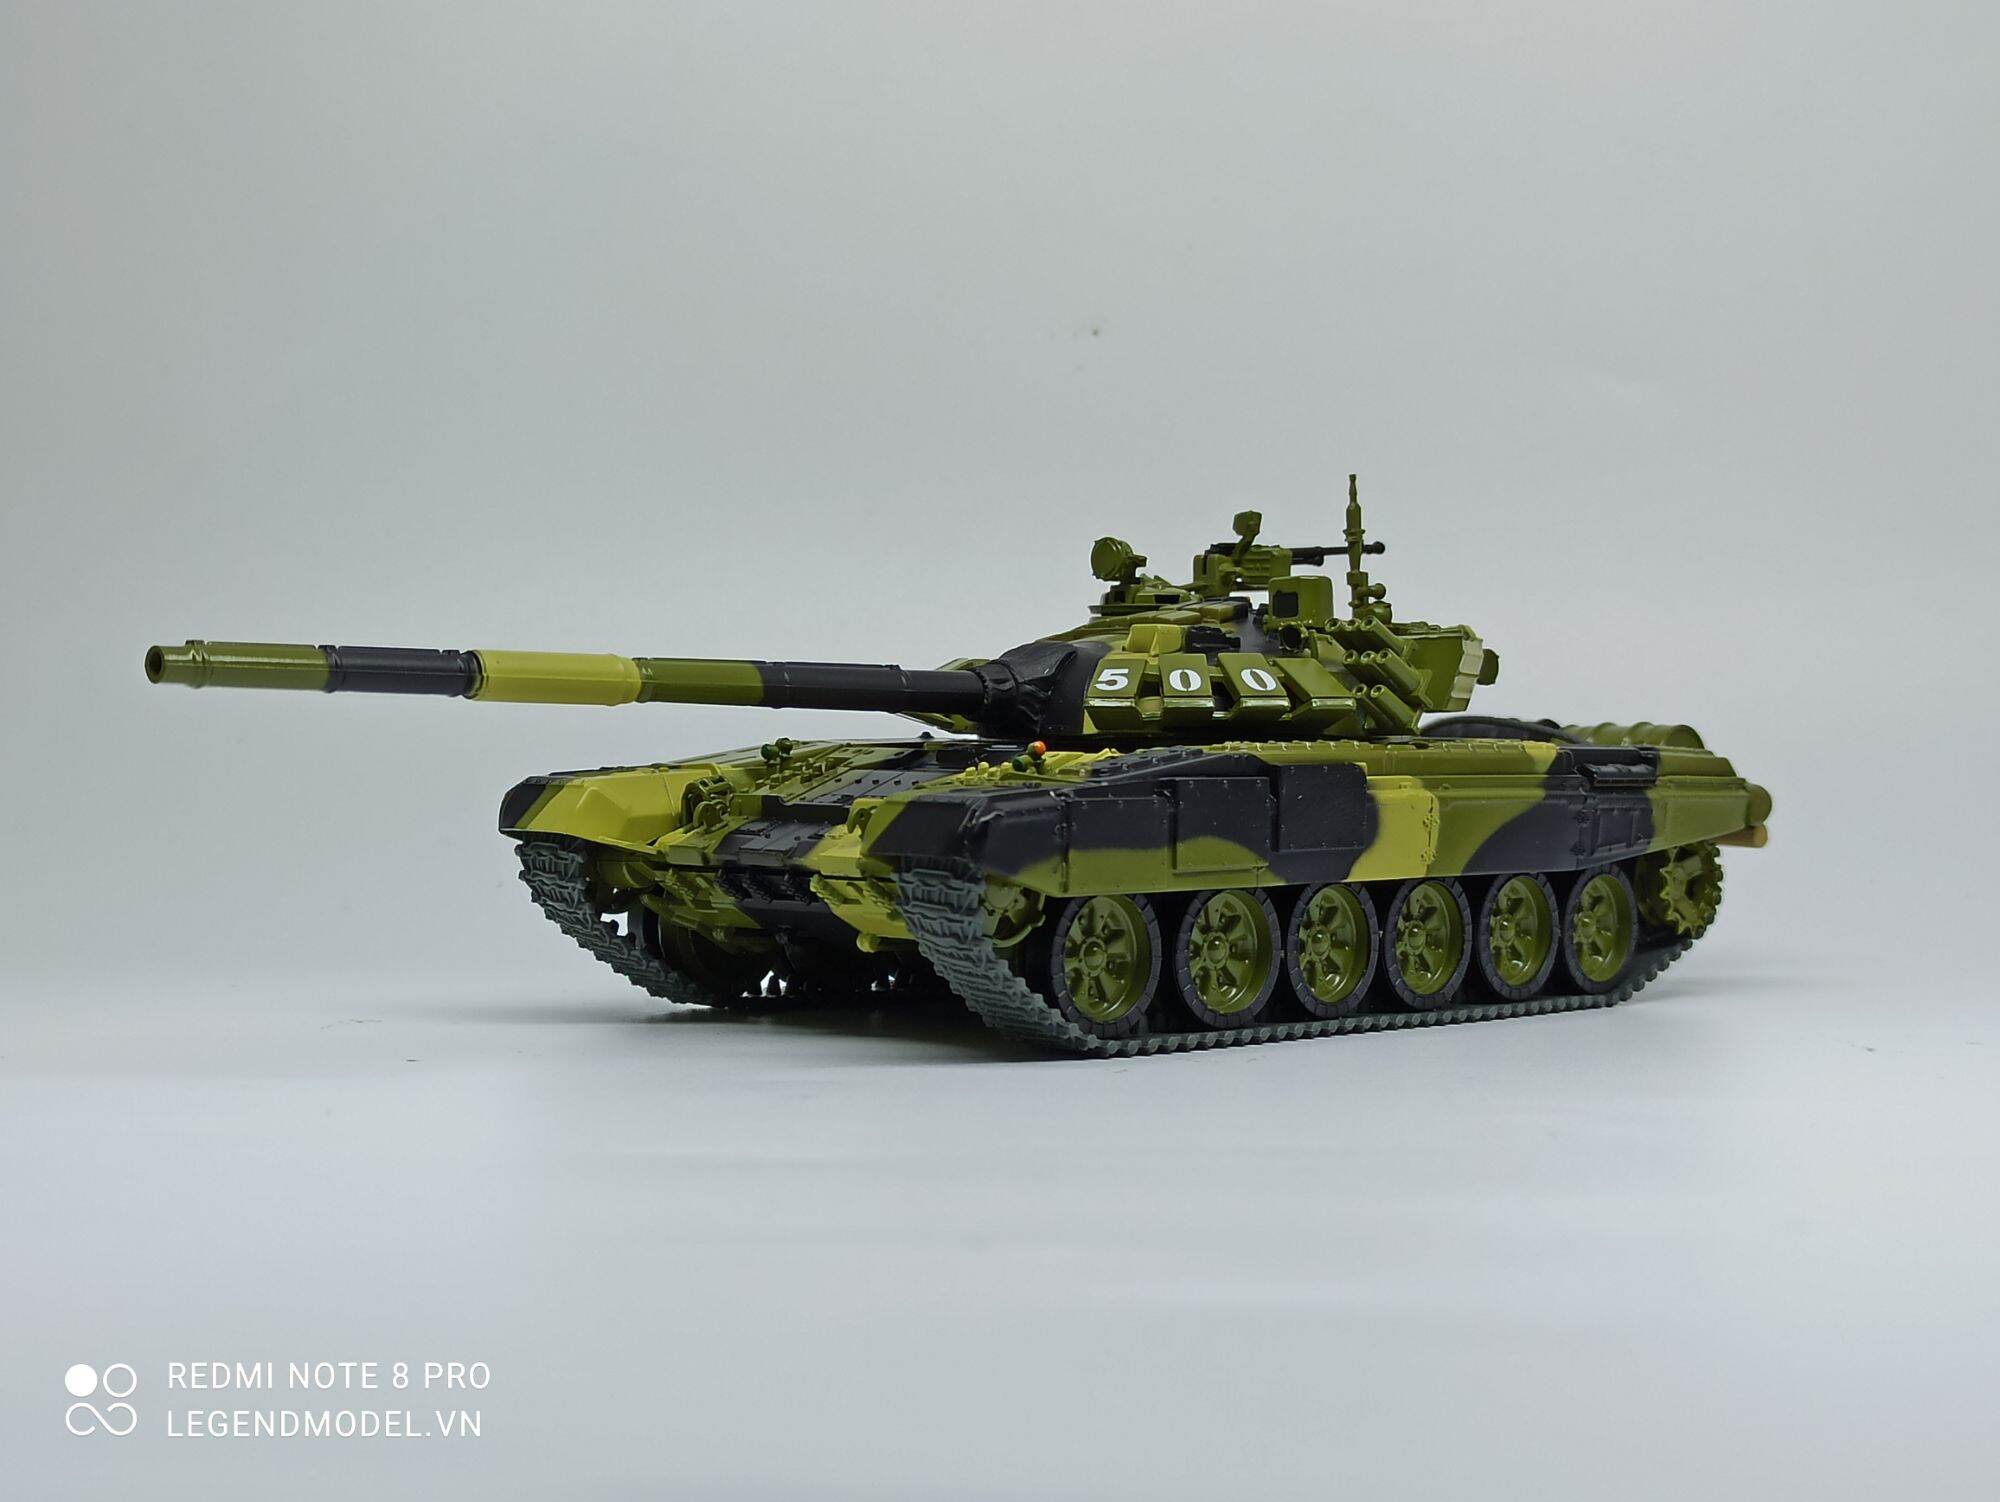 Mô hình xe tăng T54: Ngắm nhìn mô hình xe tăng T54 đầy chi tiết trong bức ảnh và cảm nhận vẻ đẹp của công nghệ ngày xưa.